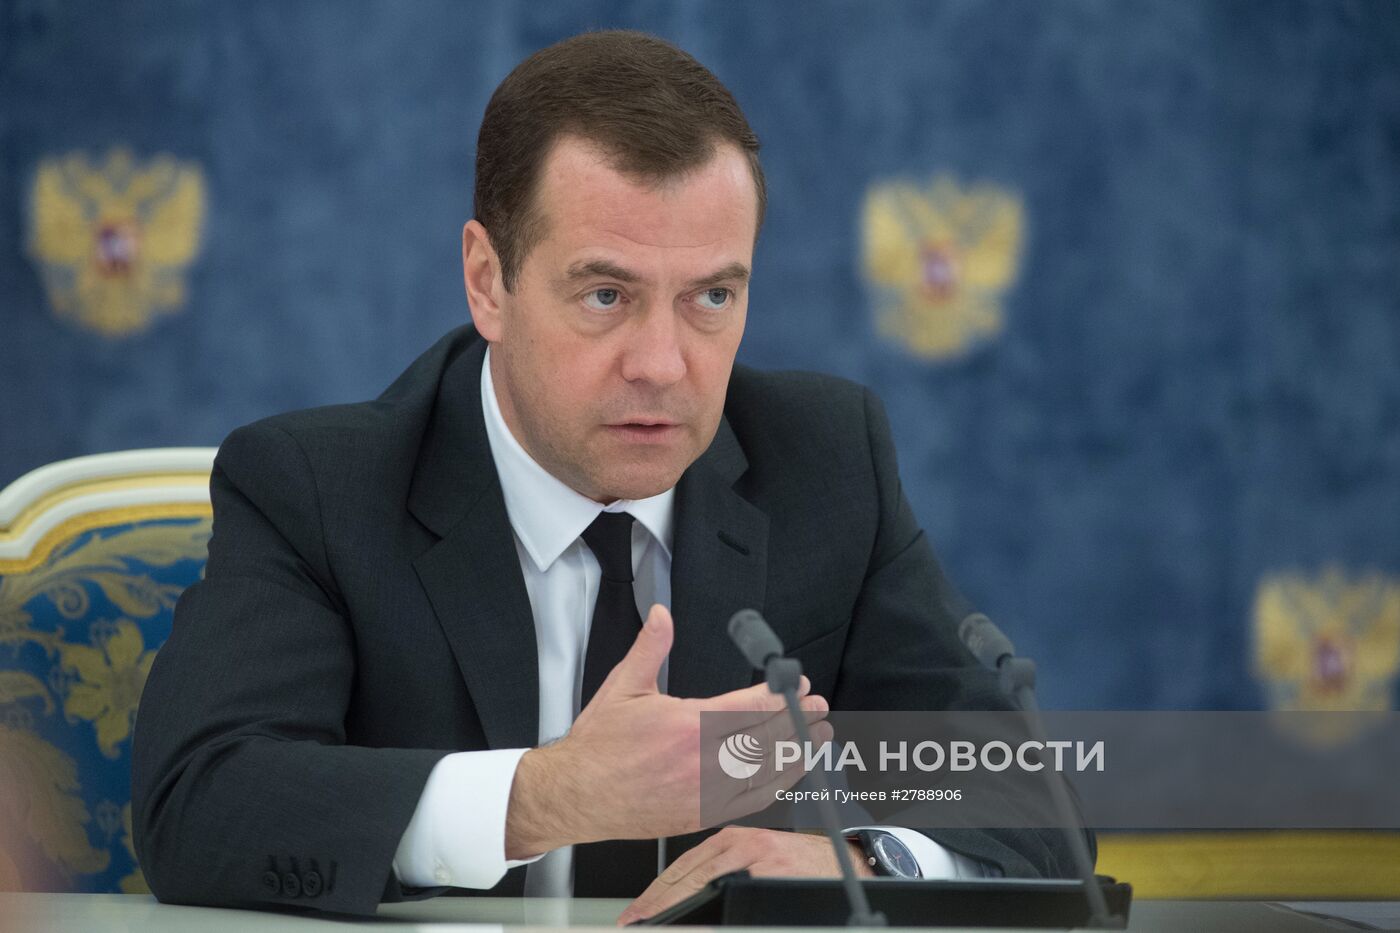 Премьер-министр РФ Д. Медведев провел совещание о повышении эффективности бюджетных расходов